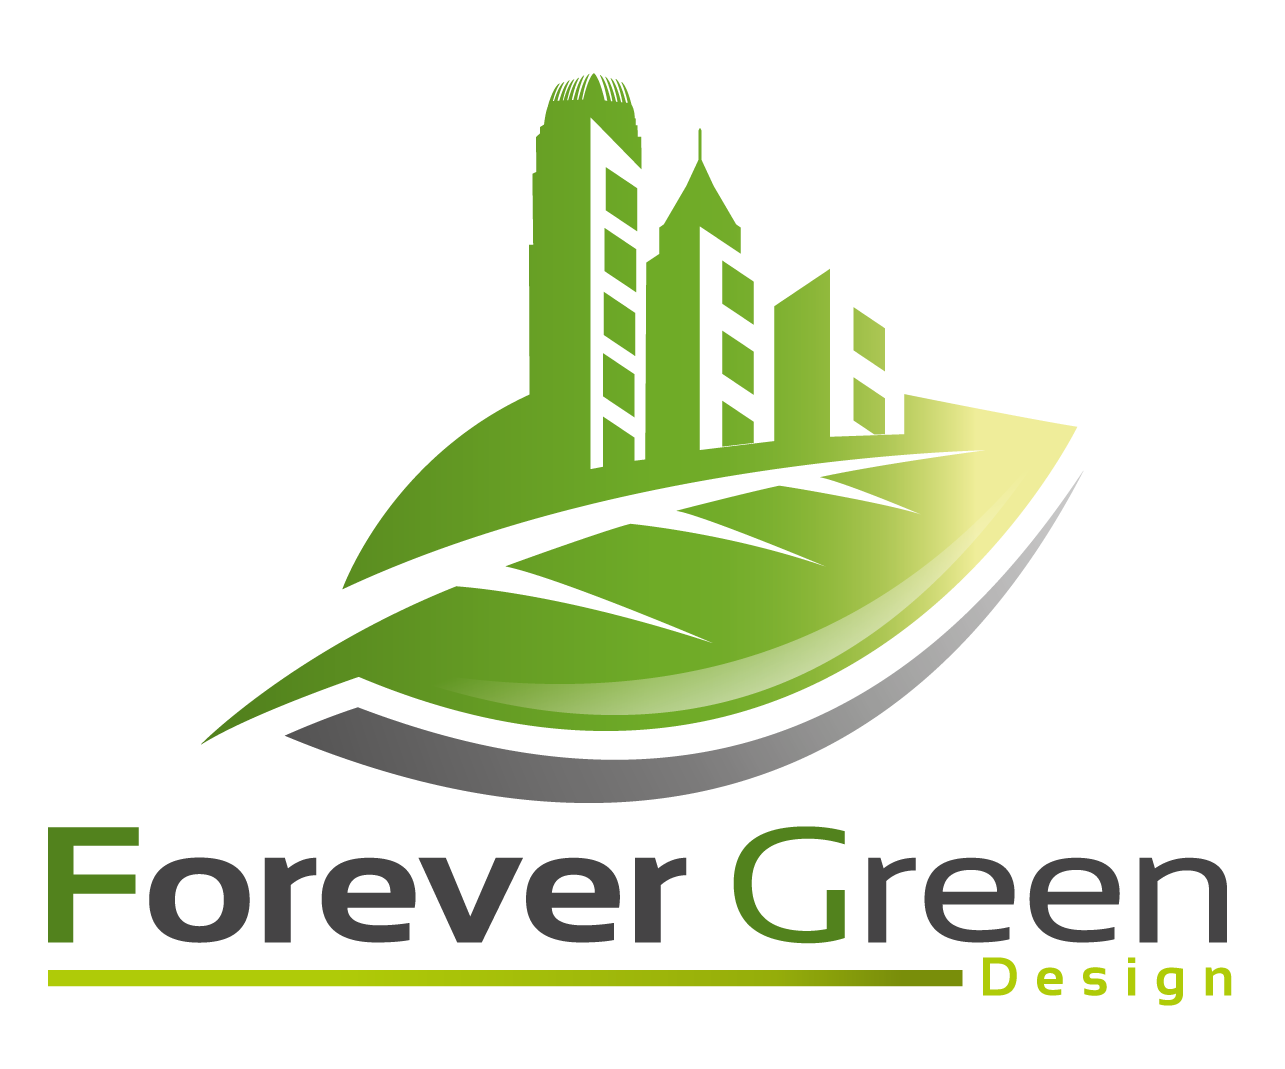 Forever Green Design - 